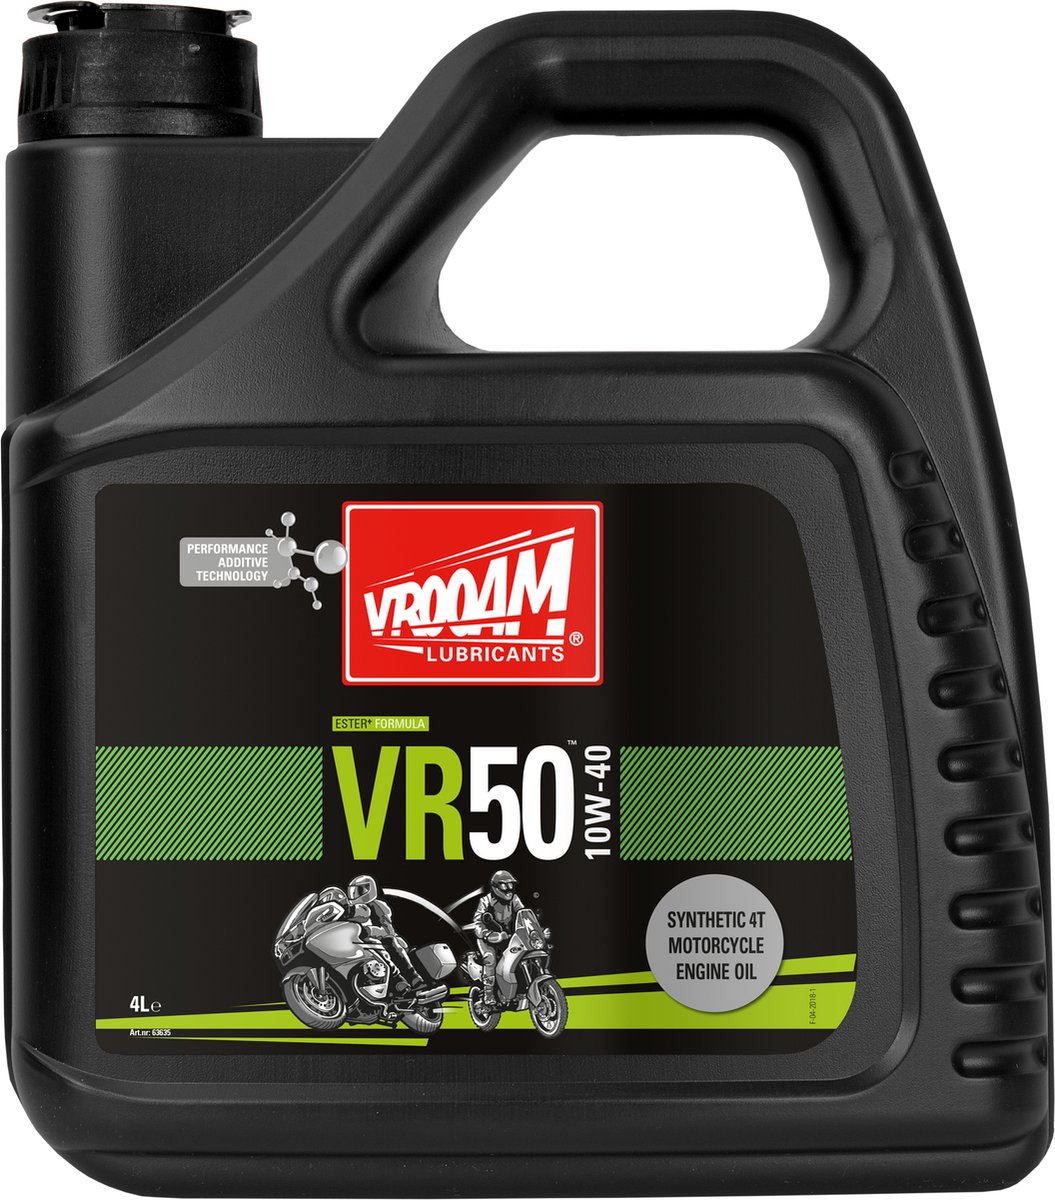 VROOAM VR50 Engine Oil 10w-40 4 L